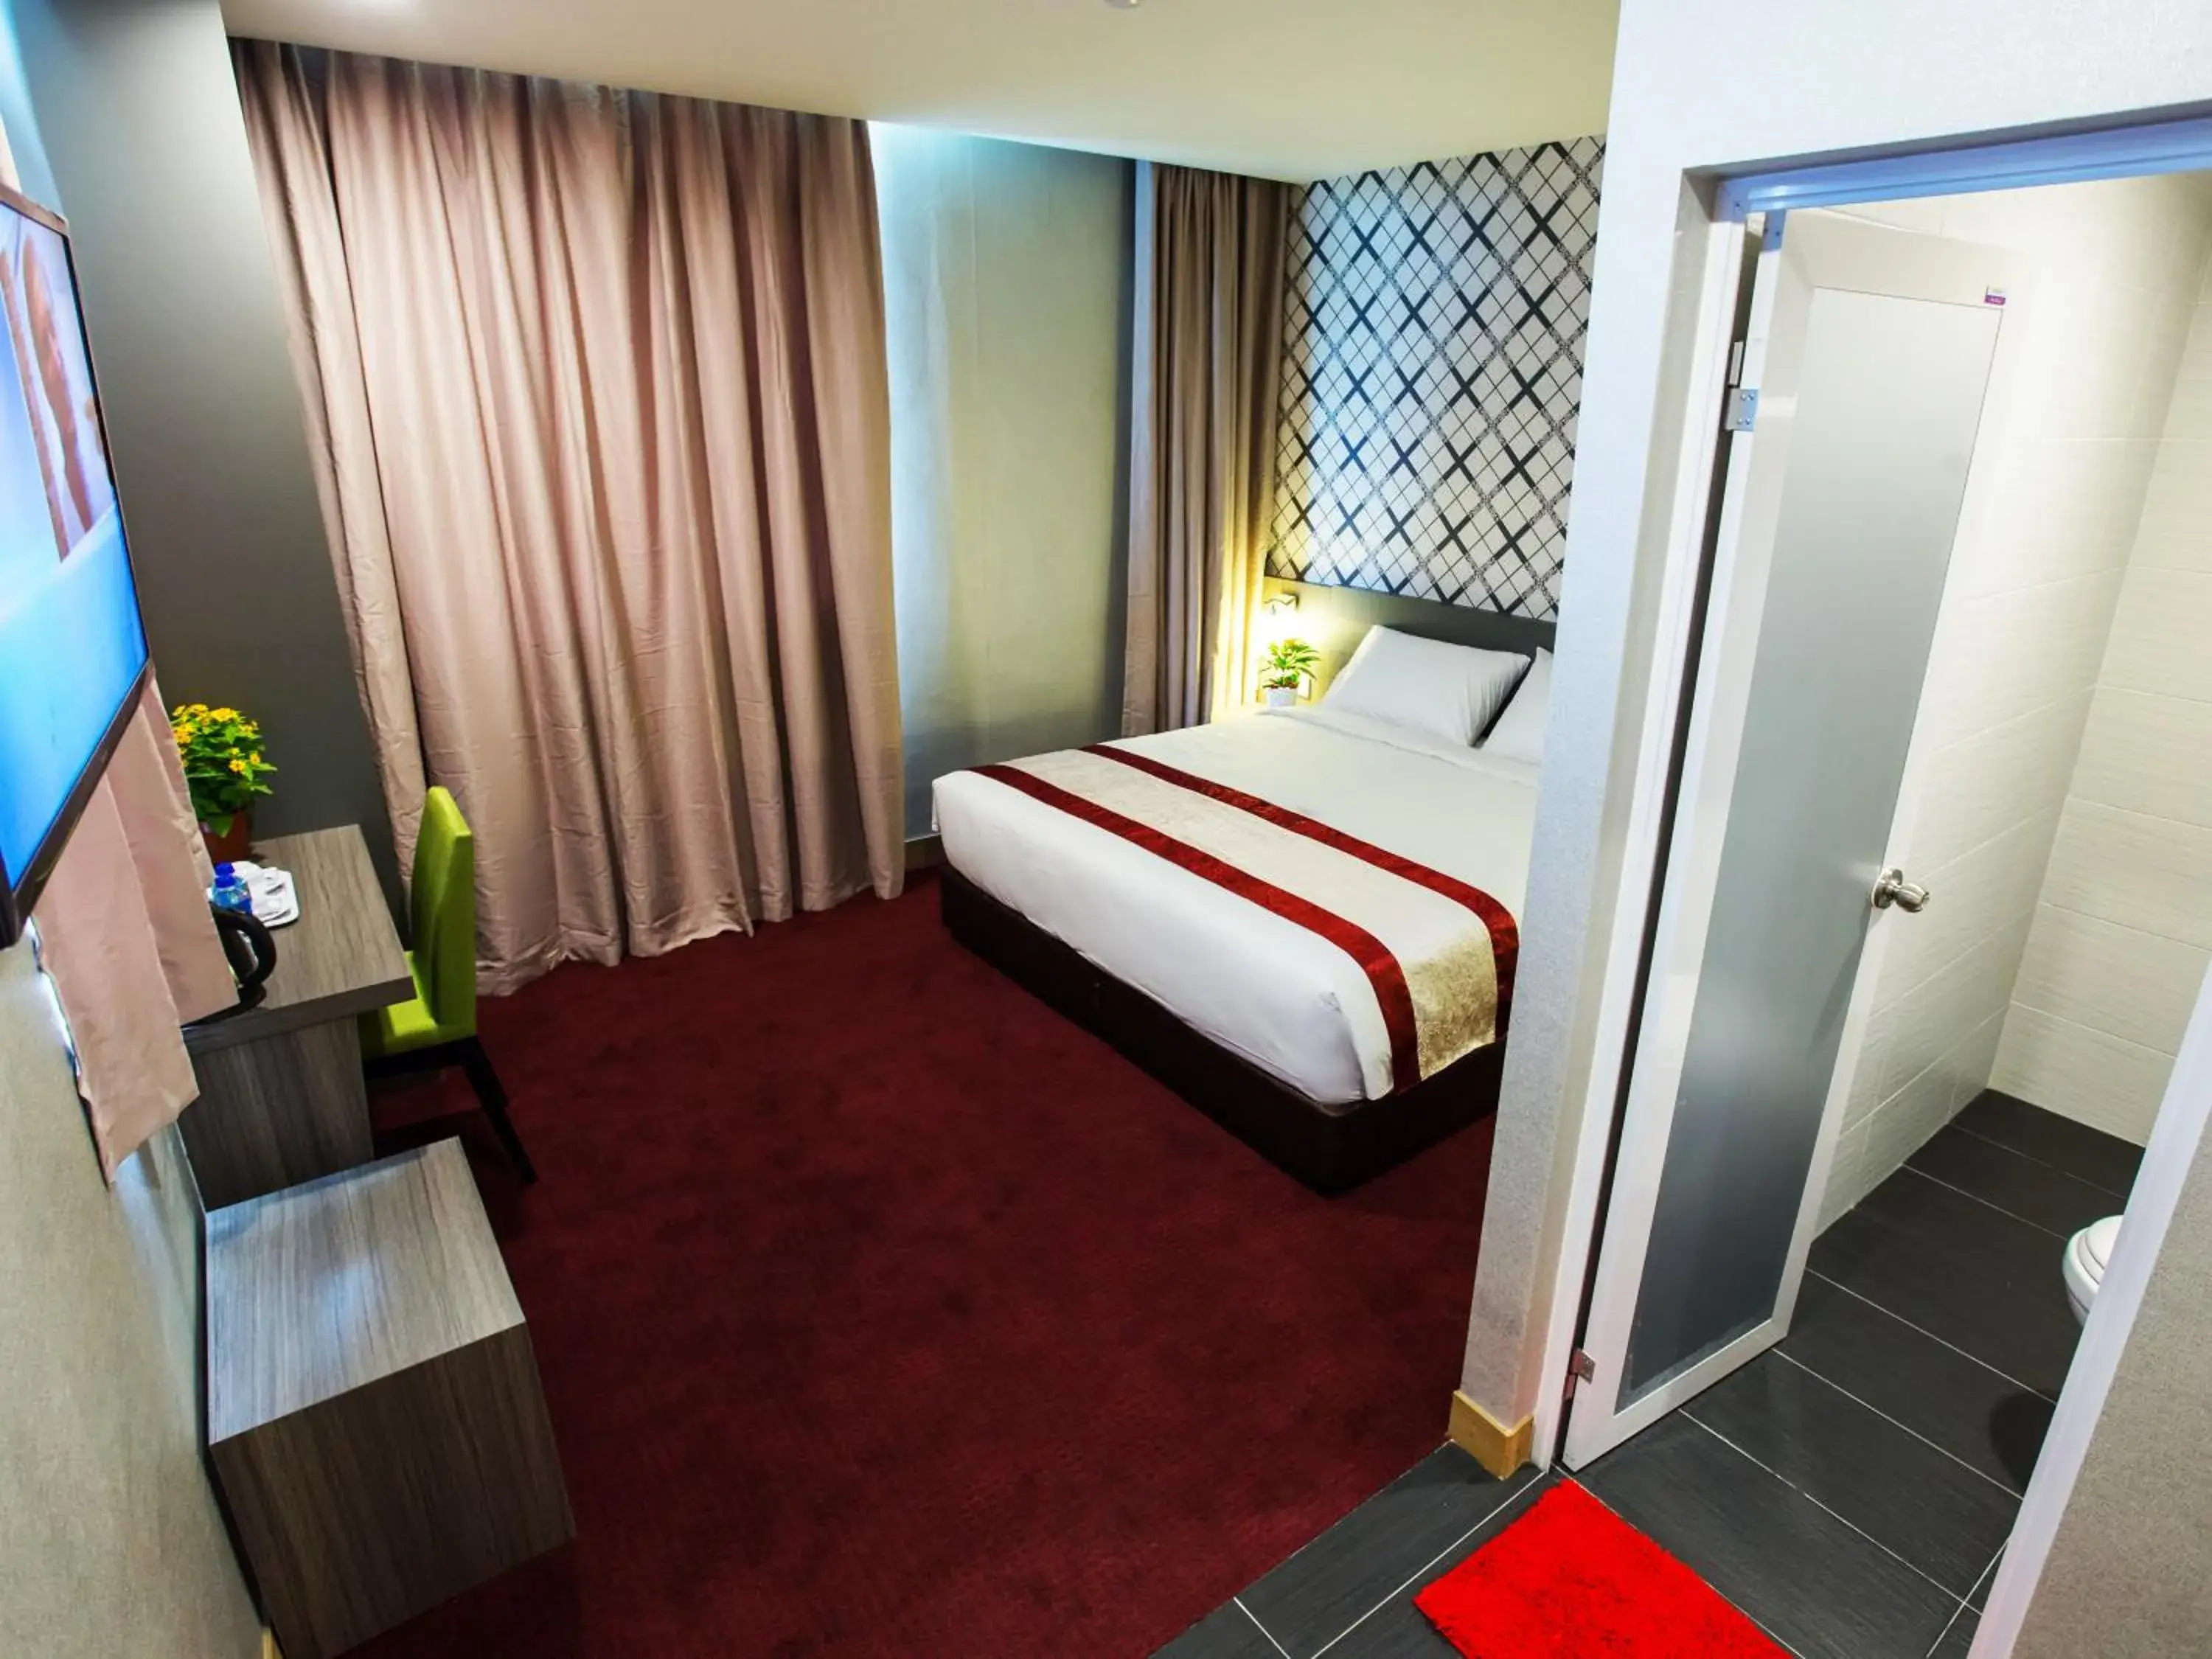 Bedroom, Room Photo in LS Hotel